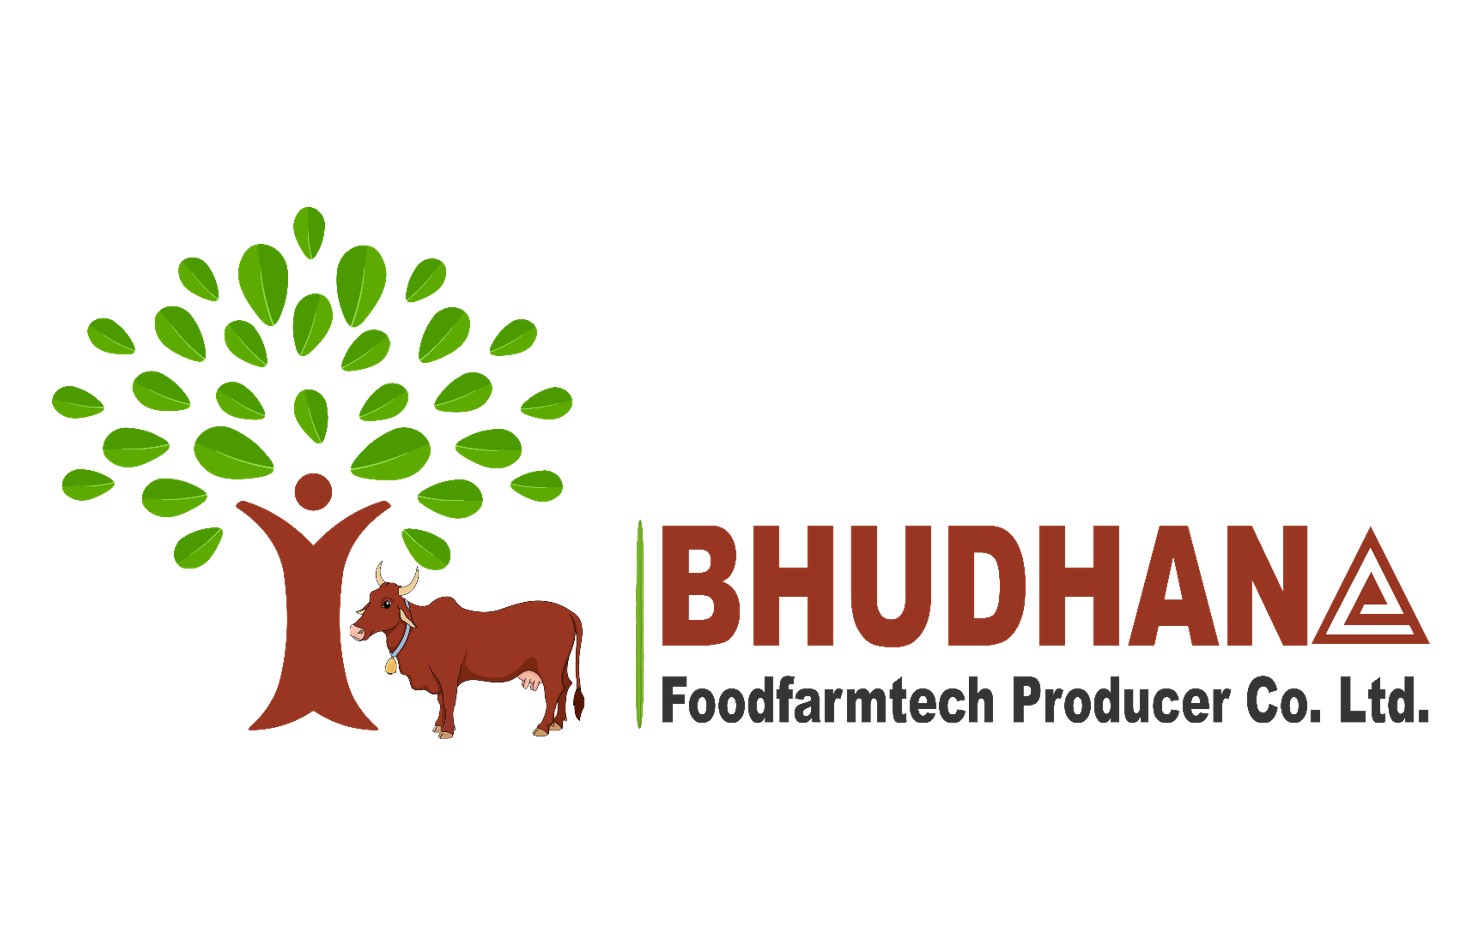 Bhudhana